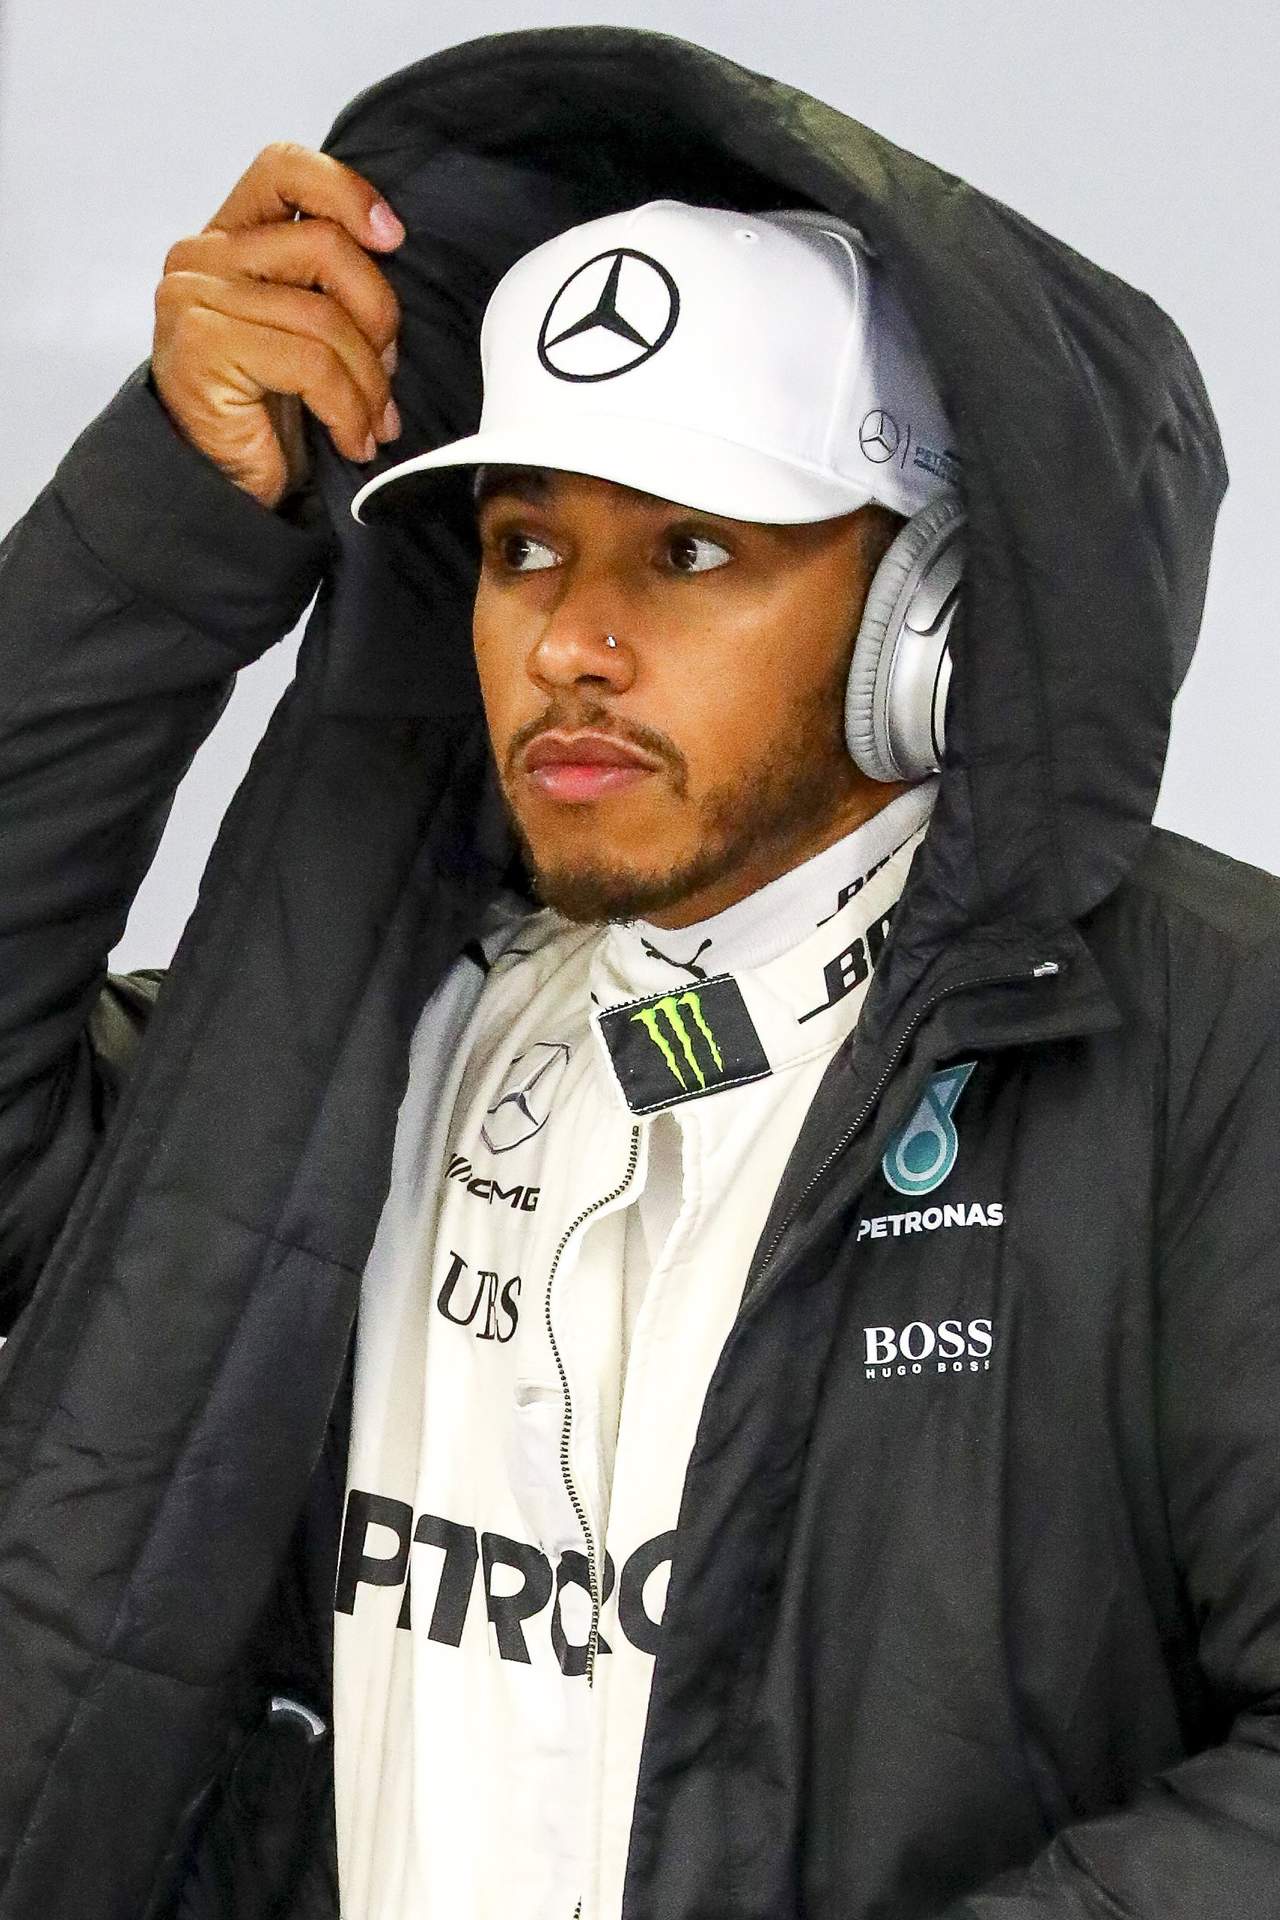 Pese a la victoria de Hamilton en la húmeda carrera de Singapur y su segundo puesto en Sepang, Mercedes ha tenido problemas para igualar el ritmo de sus escuderías rivales Ferrari y Red Bull.
